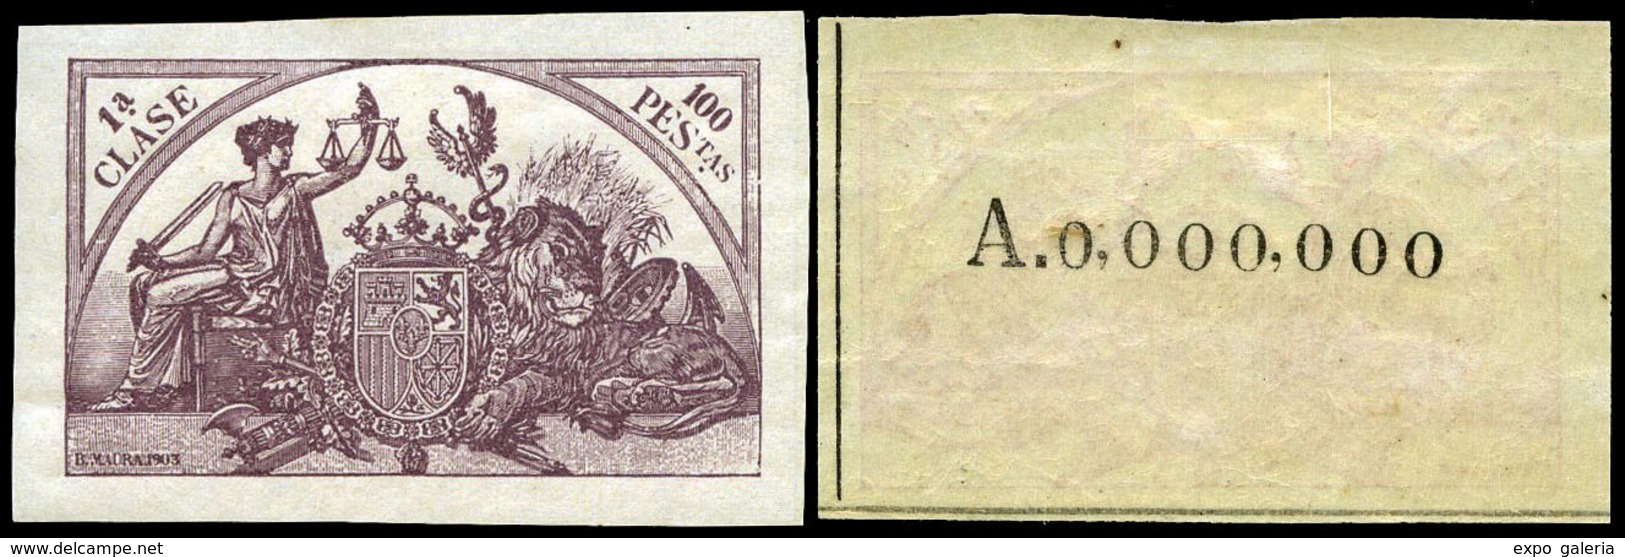 Alemany 521/32 - 1904. Pólizas. 12 Valores. Serie Completa S/D. Numeración 000.000 Al Dorso…. - Fiscaux